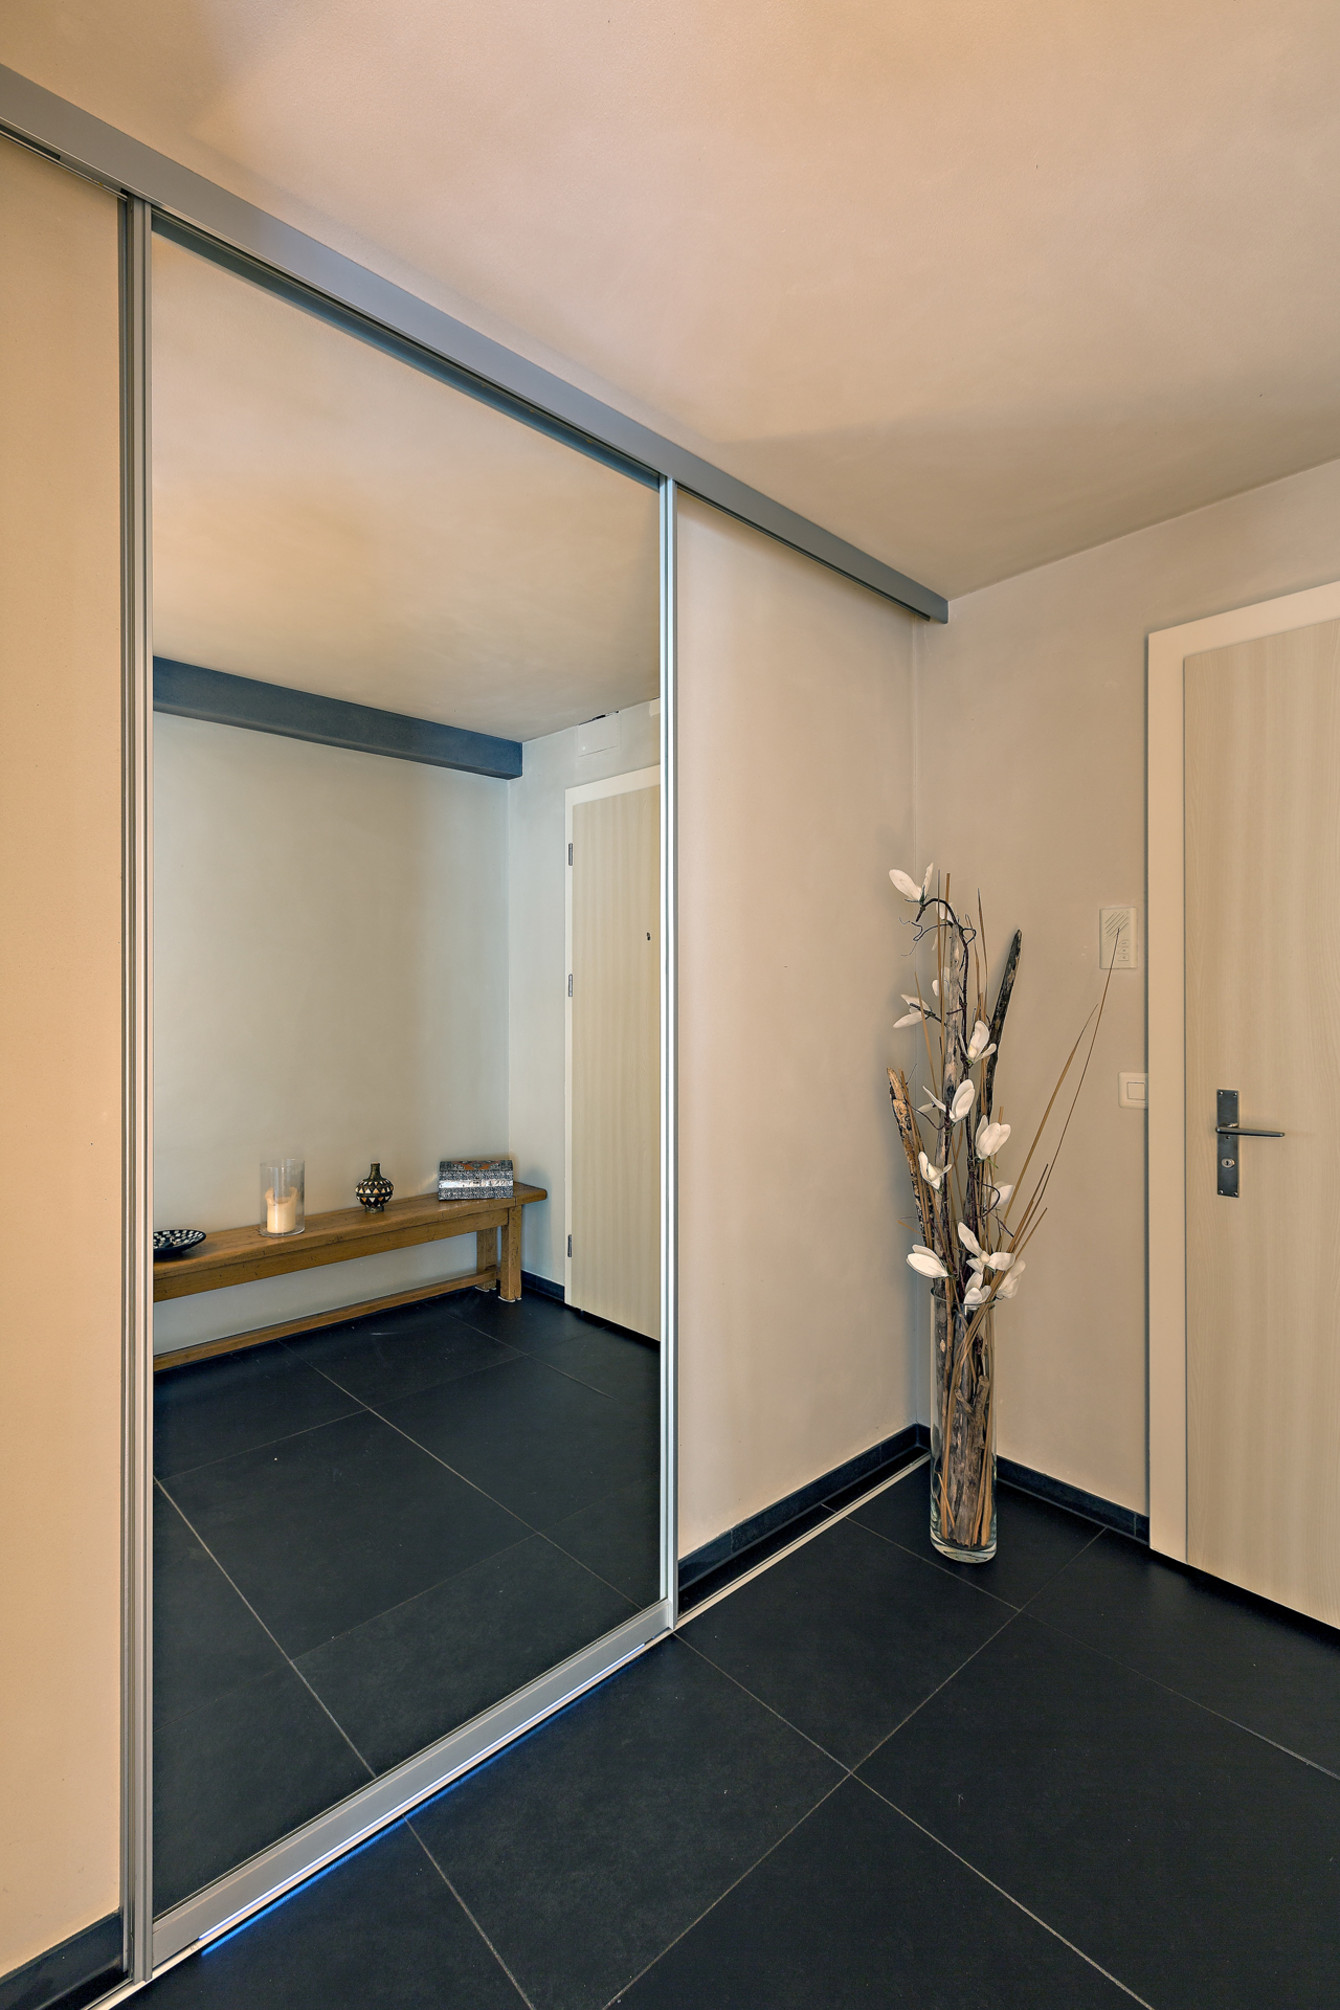 Der übergroße Spiegel verbirgt den Eingang ins Bad - ausgeführt als bewegliche Schiebetür